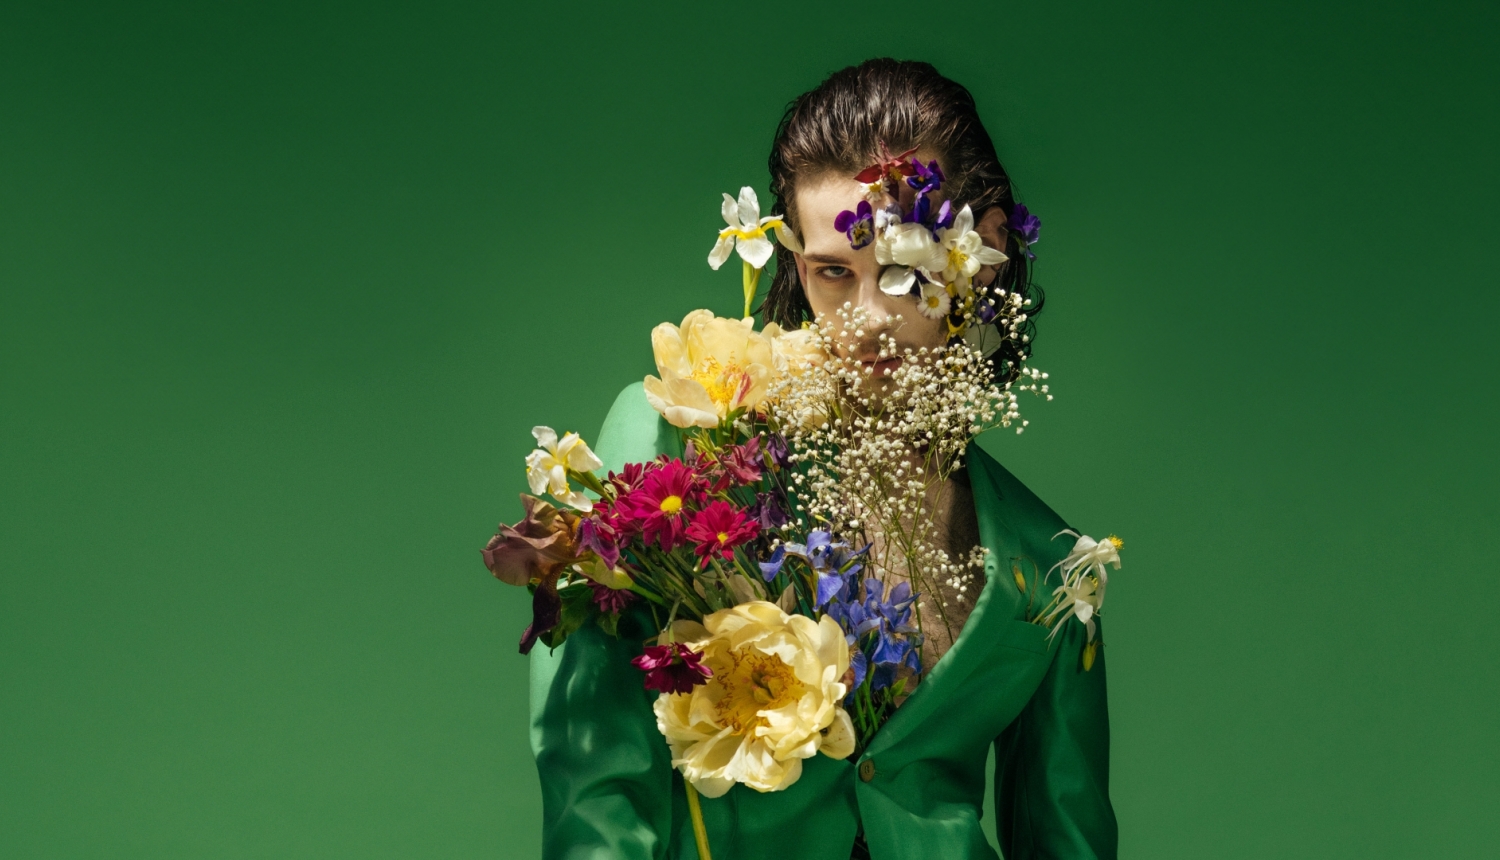 Rīgas Operas festivāla publicitātes attēls - operdziedātājs ar ziediem